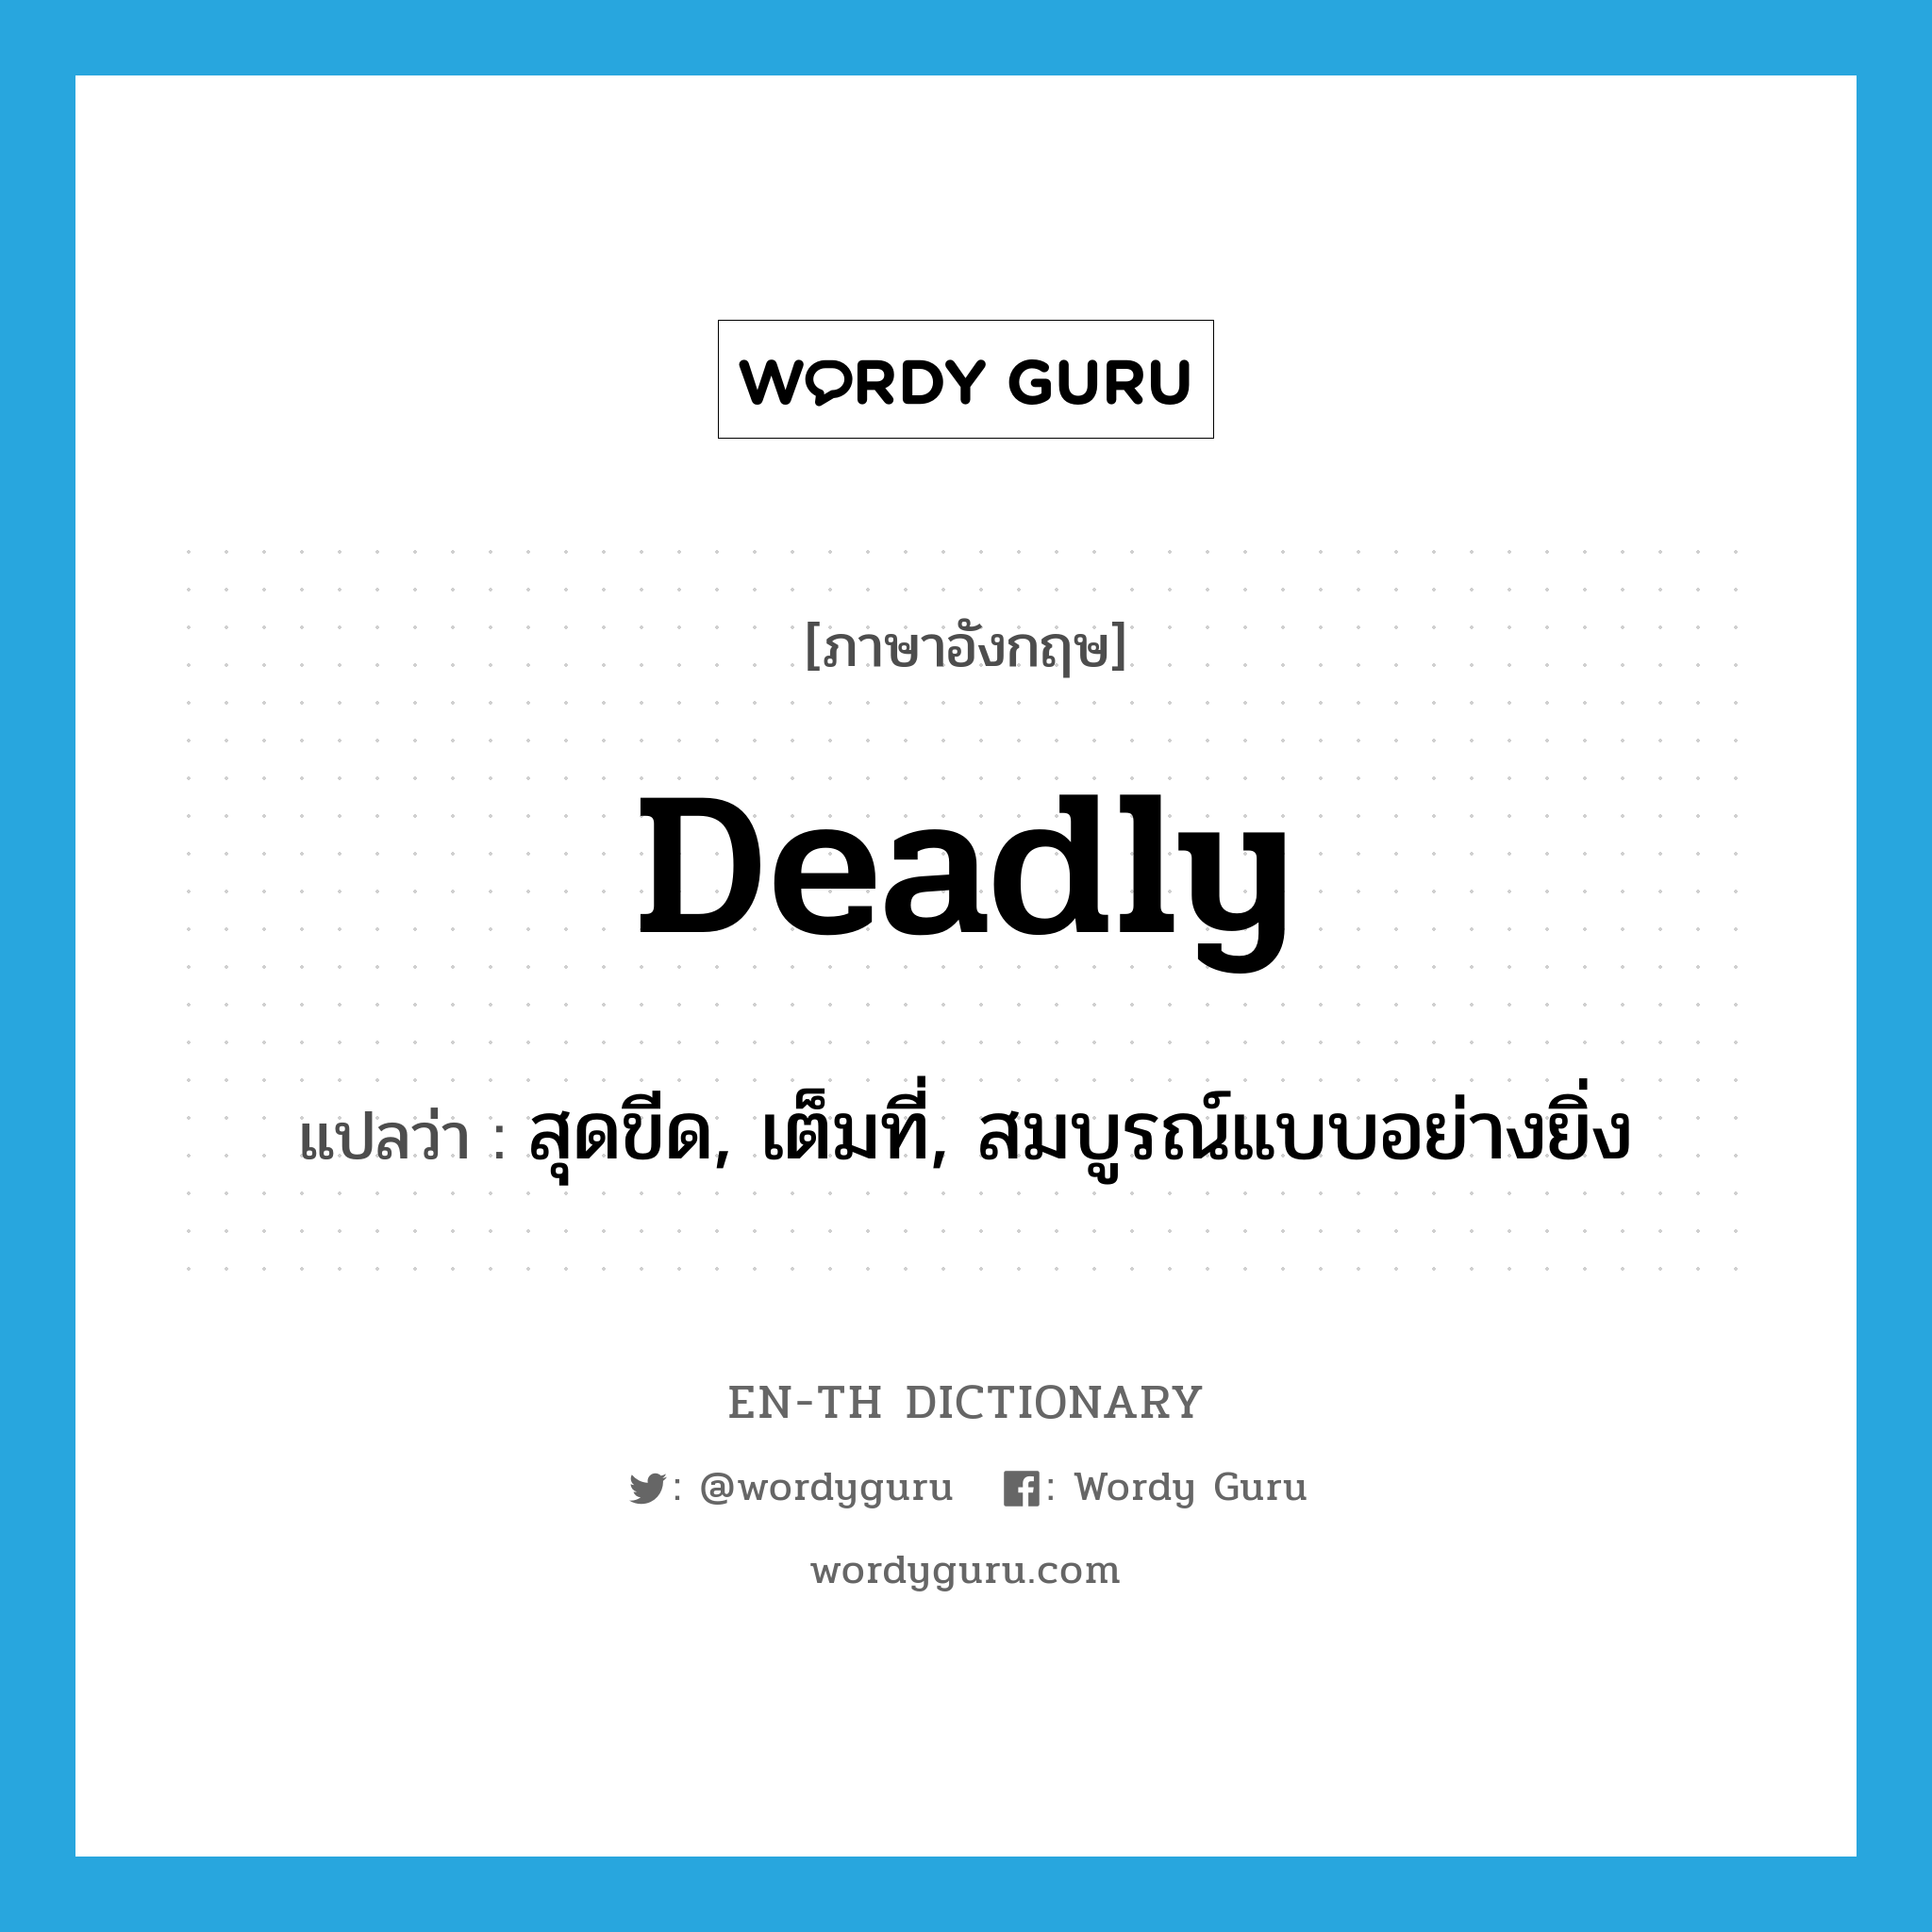 deadly แปลว่า?, คำศัพท์ภาษาอังกฤษ deadly แปลว่า สุดขีด, เต็มที่, สมบูรณ์แบบอย่างยิ่ง ประเภท ADV หมวด ADV